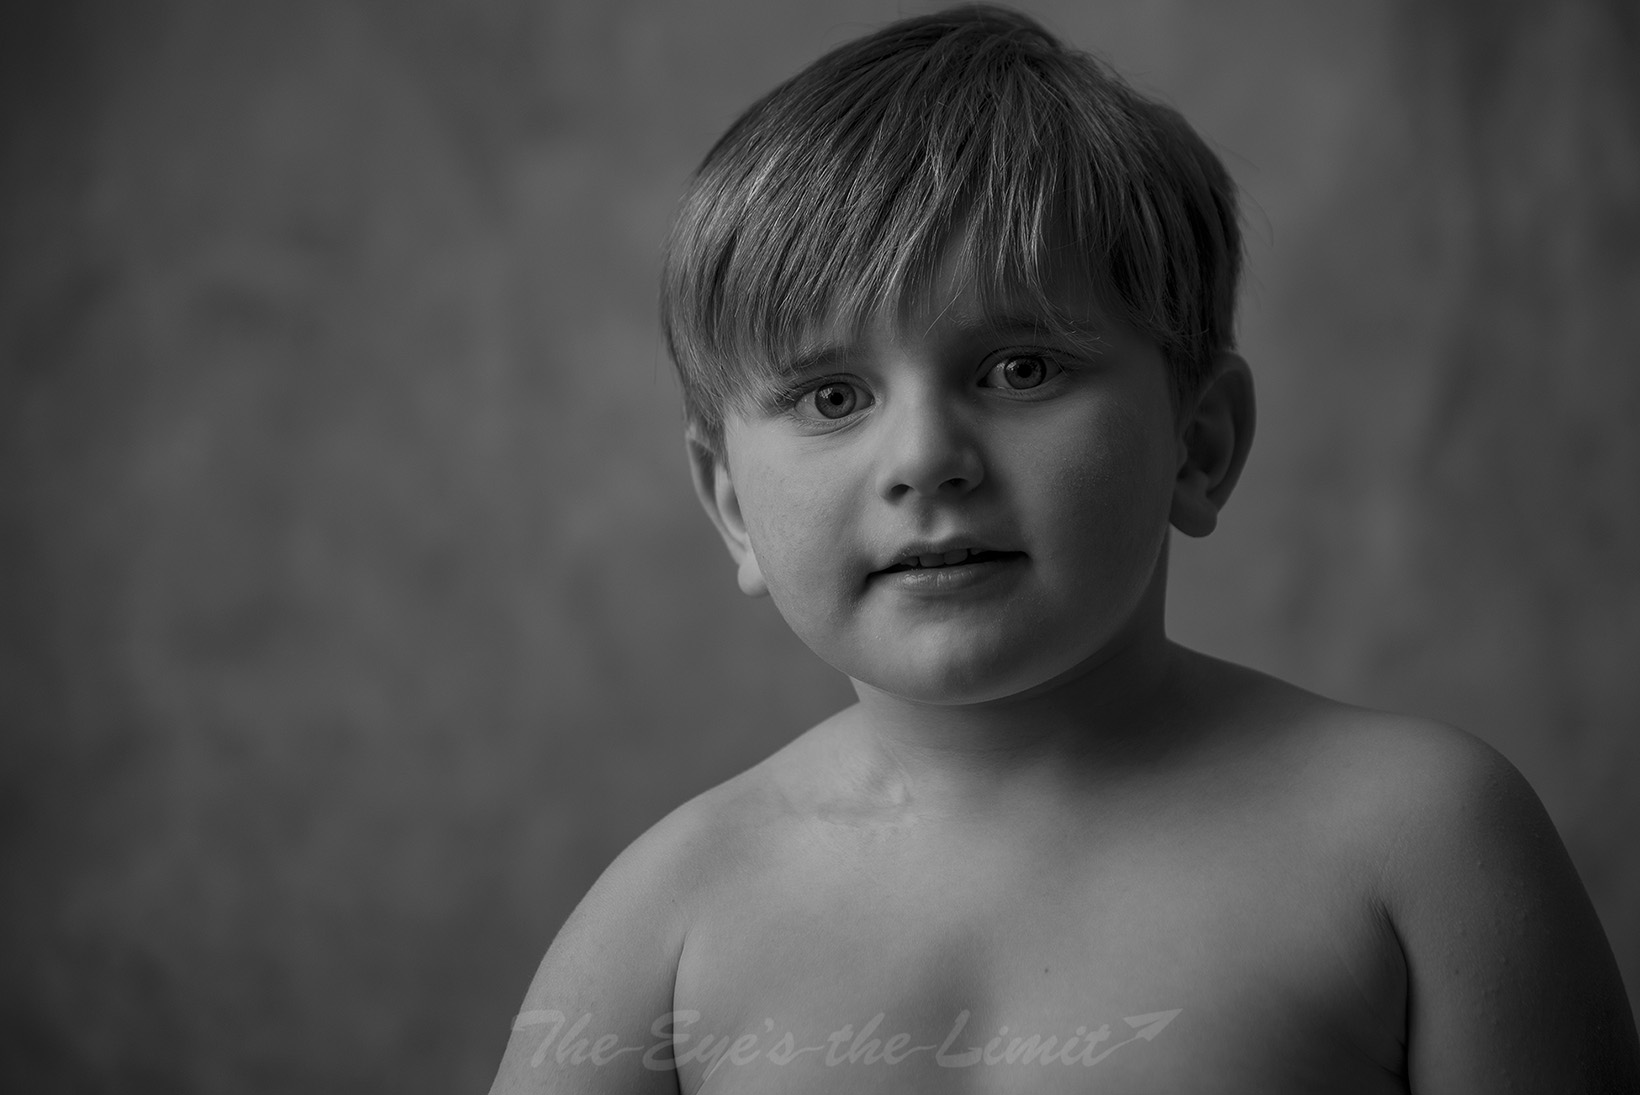 Child Portrait in black and white